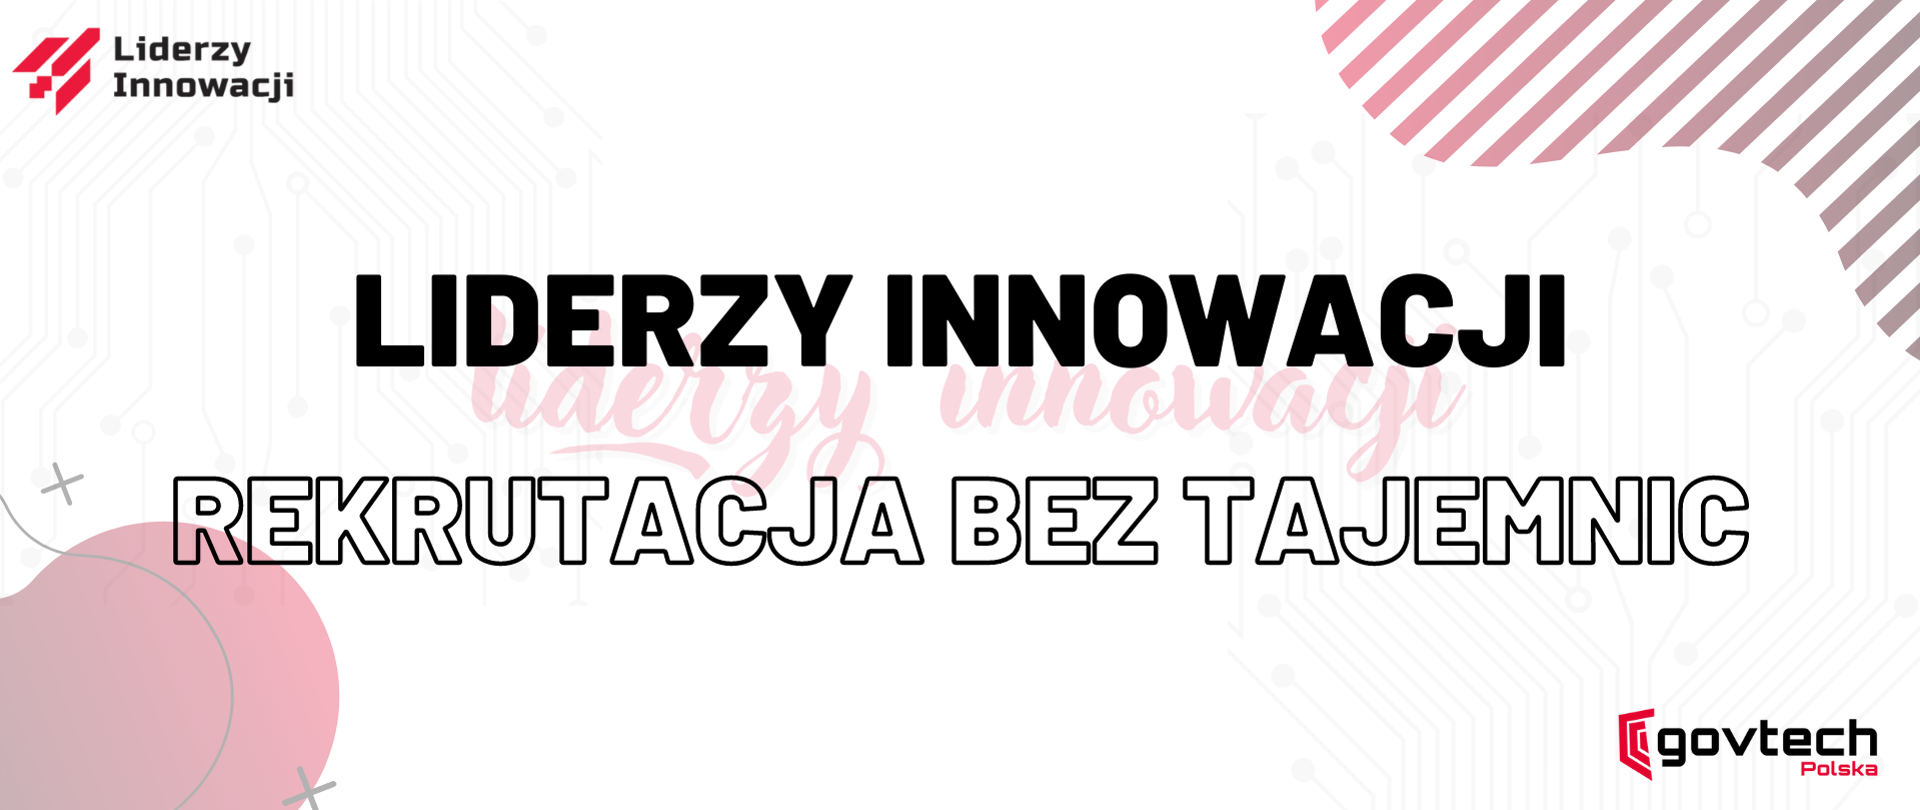 Liderzy Innowacji - Rekrutacja bez tajemnic. Logotyp GovTech Polska oraz Liderzy innowacji.